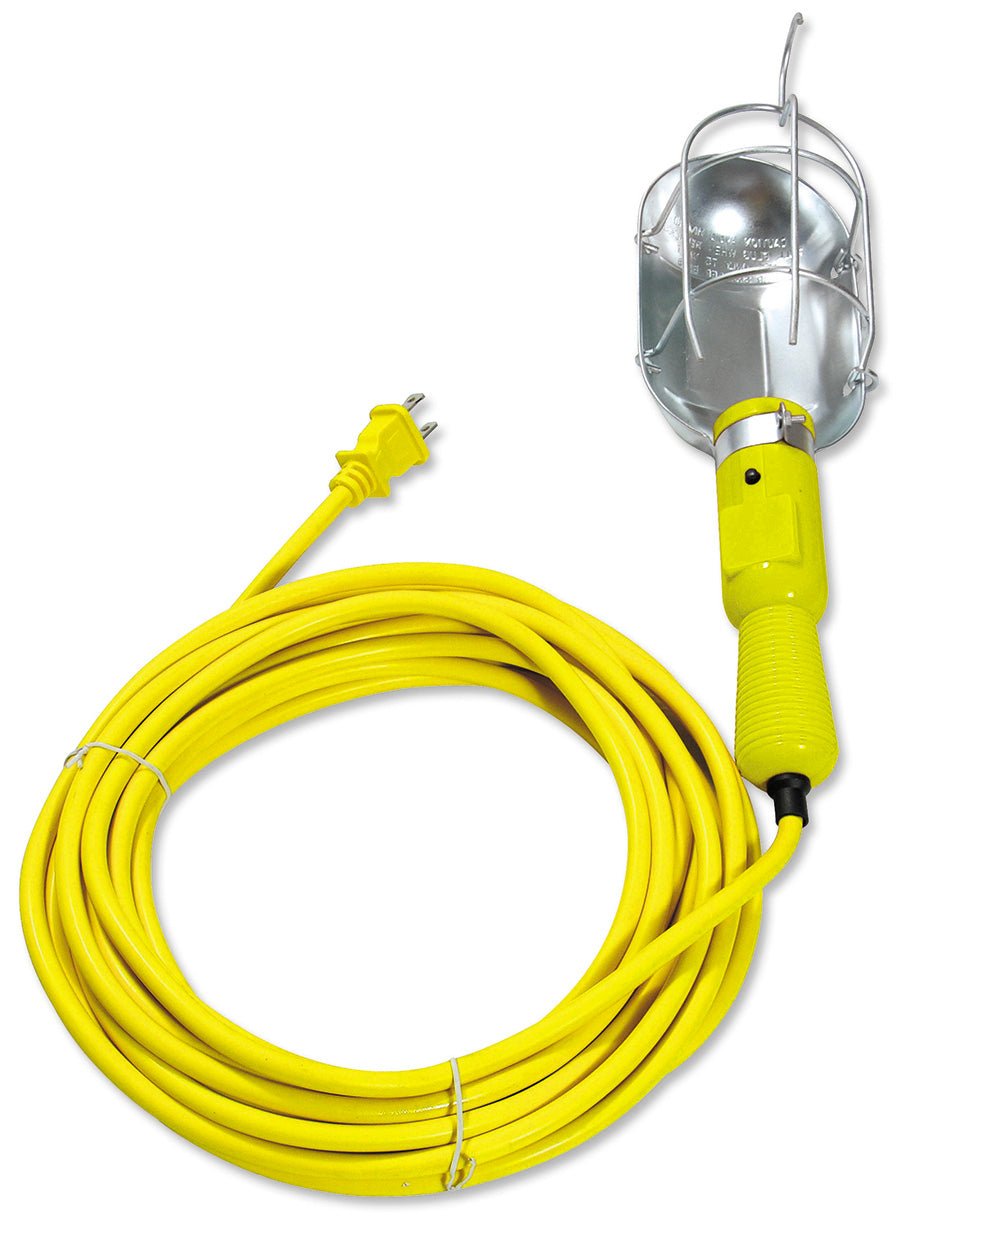 Lámpara de taller con canastilla metálica, color amarillo 8 m Surtek - FERRETERÍA WITZI